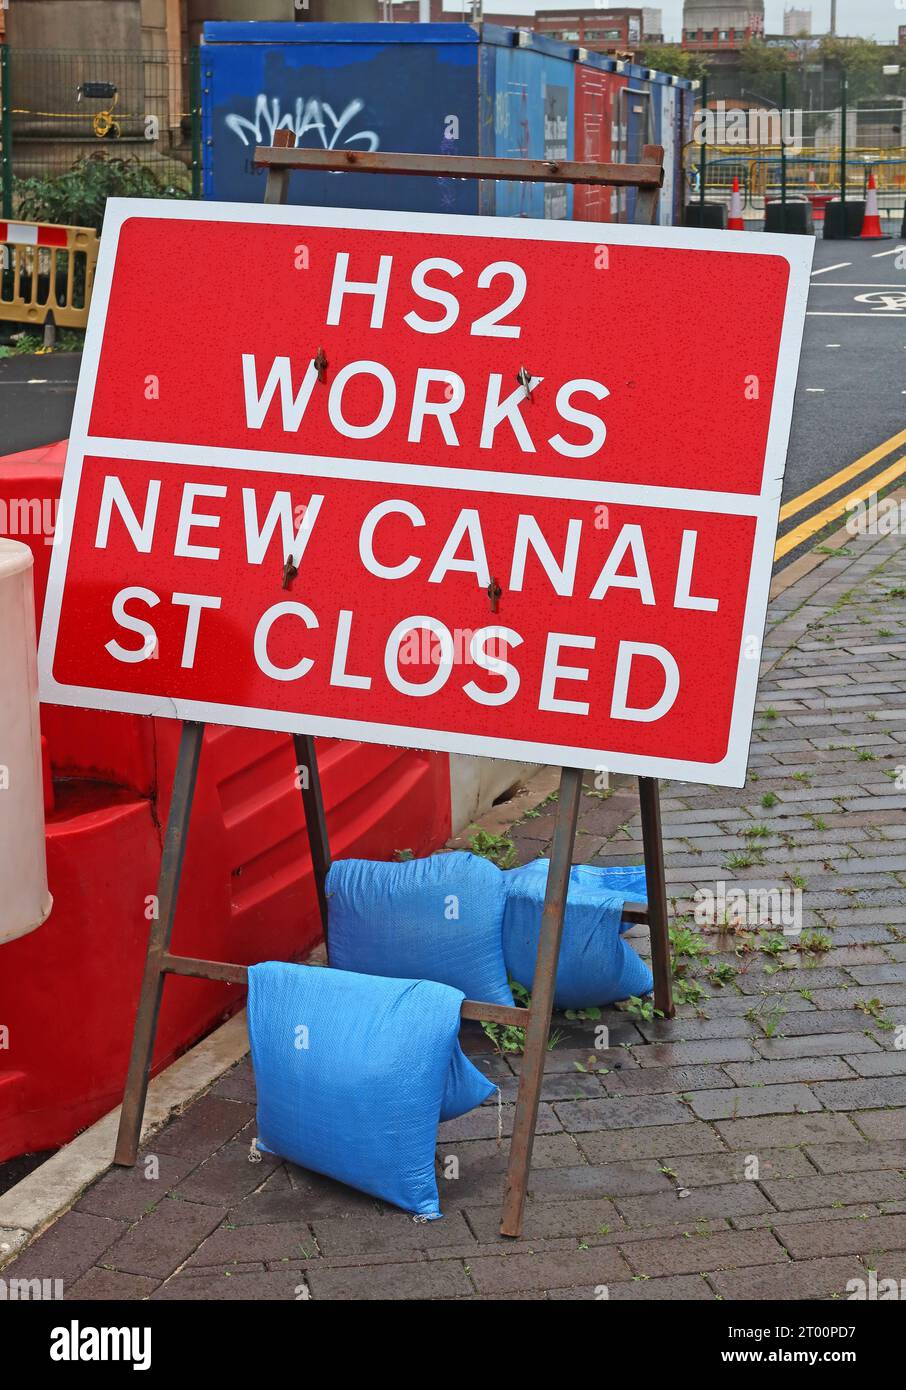 Panneau de travaux à grande vitesse HS2 à New Canal St, Curzon St, gare ferroviaire, Central Birmingham, West Midlands, ANGLETERRE, ROYAUME-UNI, B4 7XG Banque D'Images